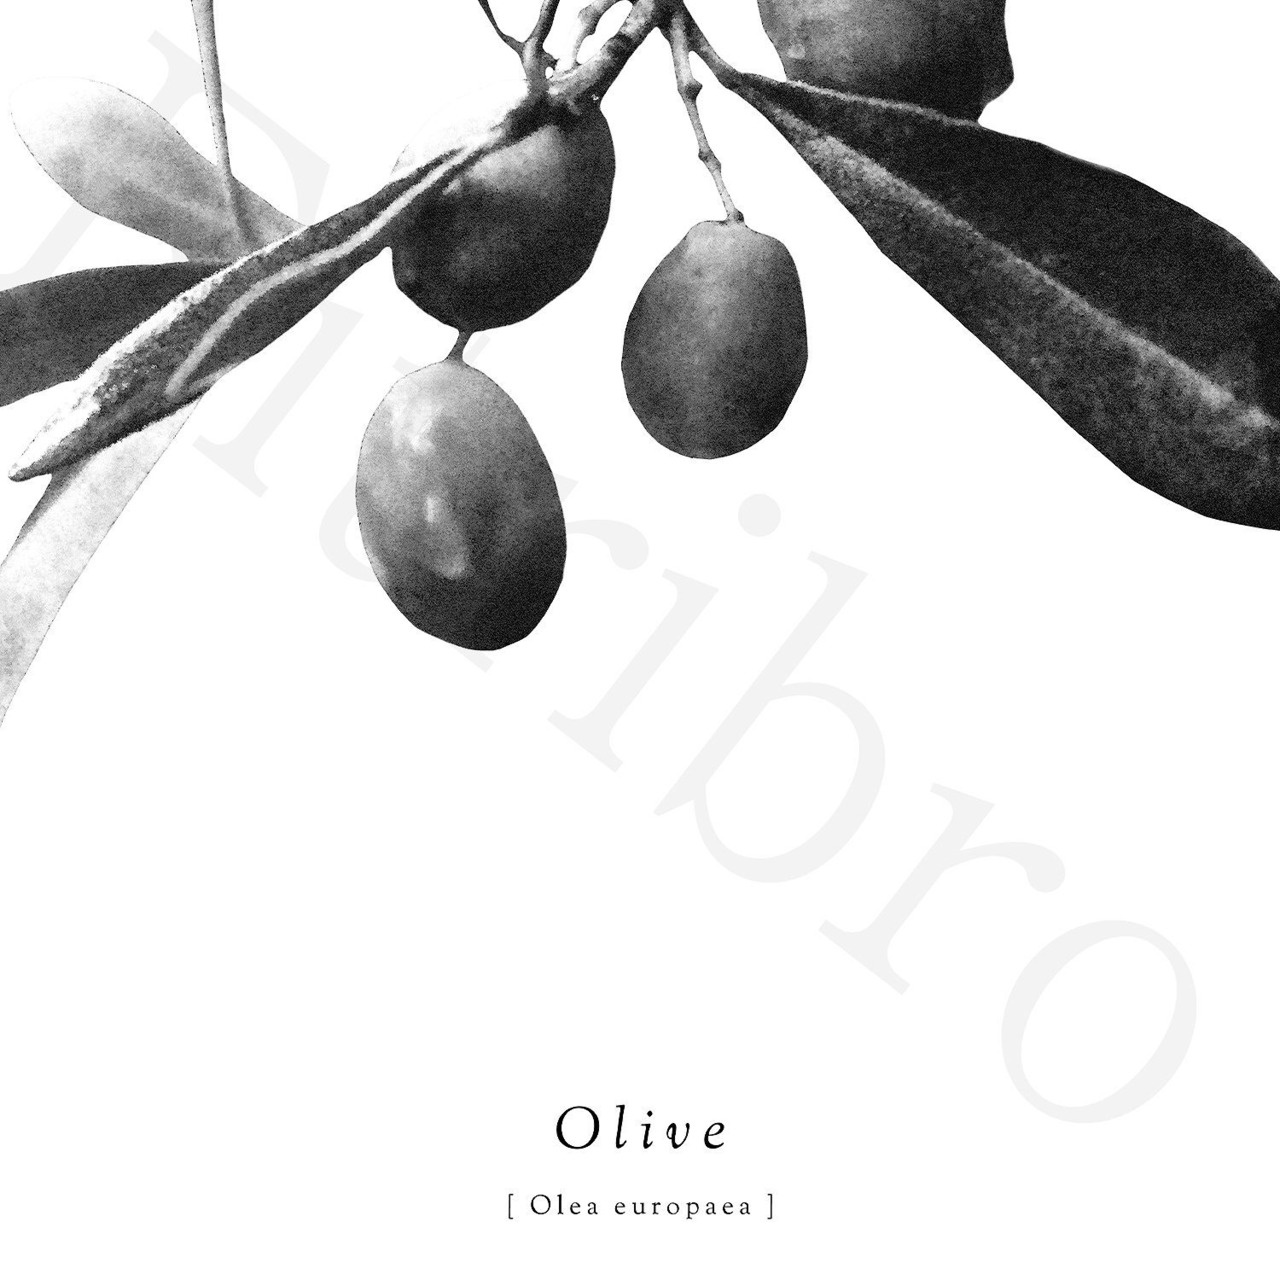 アートポスター / Olive mono  eb143